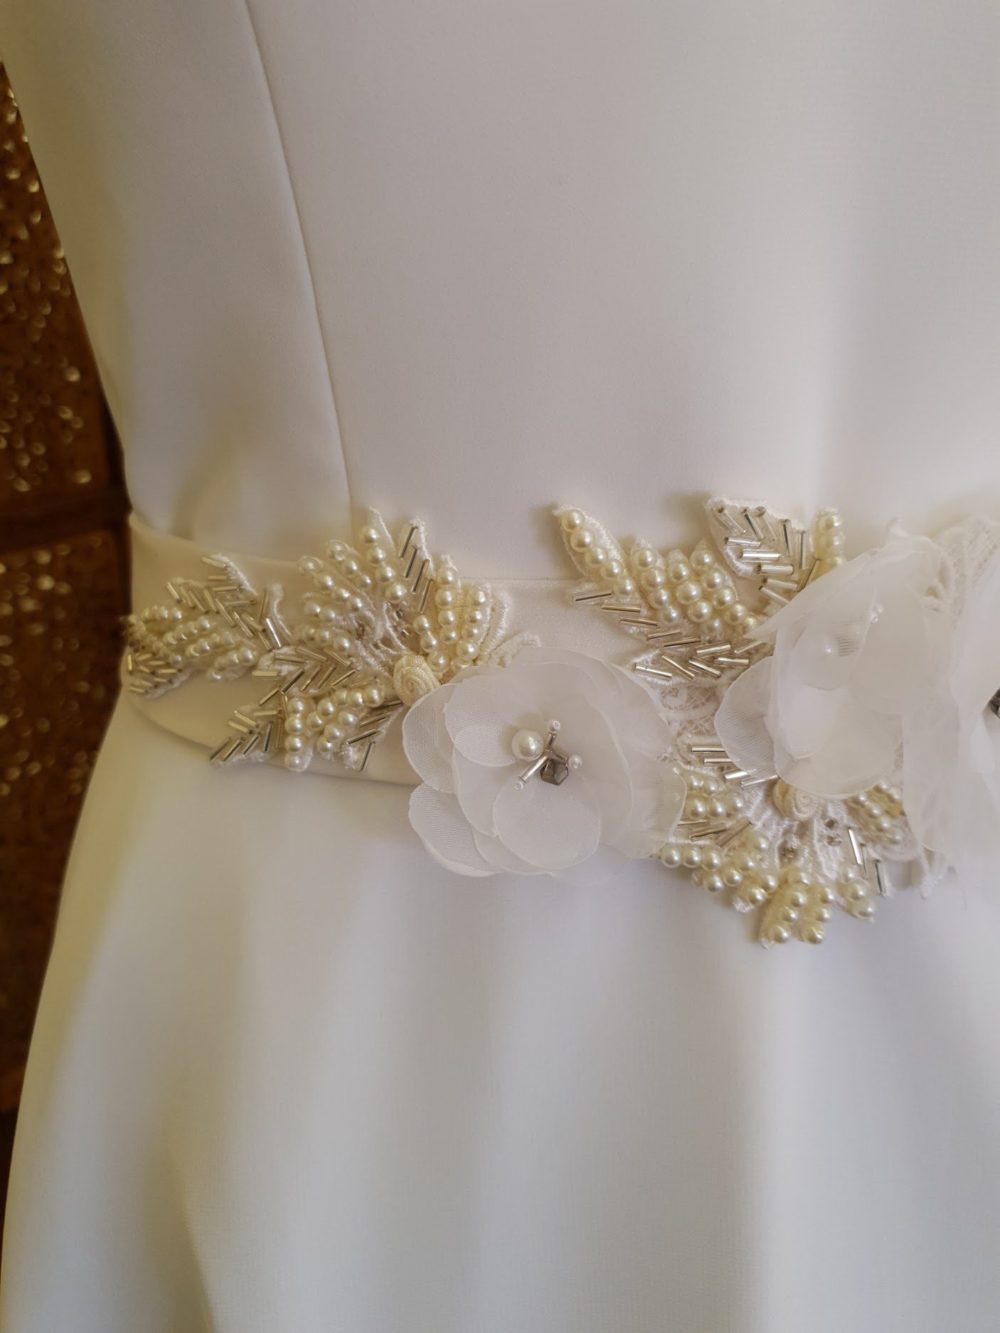 Håndlavet brudebælte af Karina Bentzen med blomster og blonder dekoreret med perler. Satinbåndet er ca. 5 cm bredt. De fleste materialer er genanvendt fra udgået brudekjoler. 